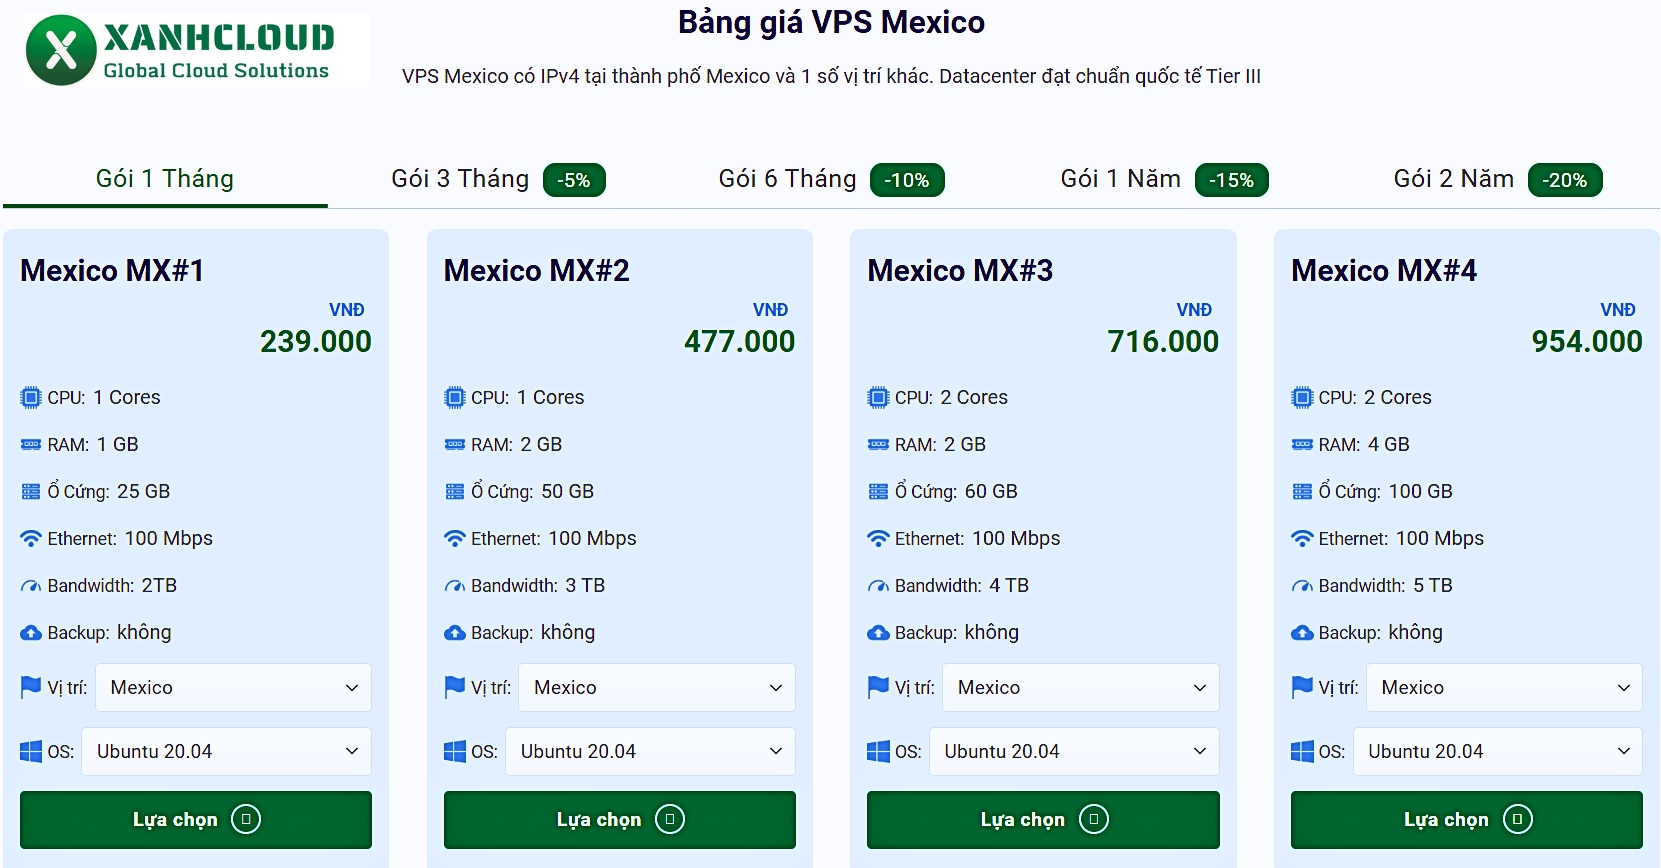 Các gói VPS Mexico đang có tại XanhCloud